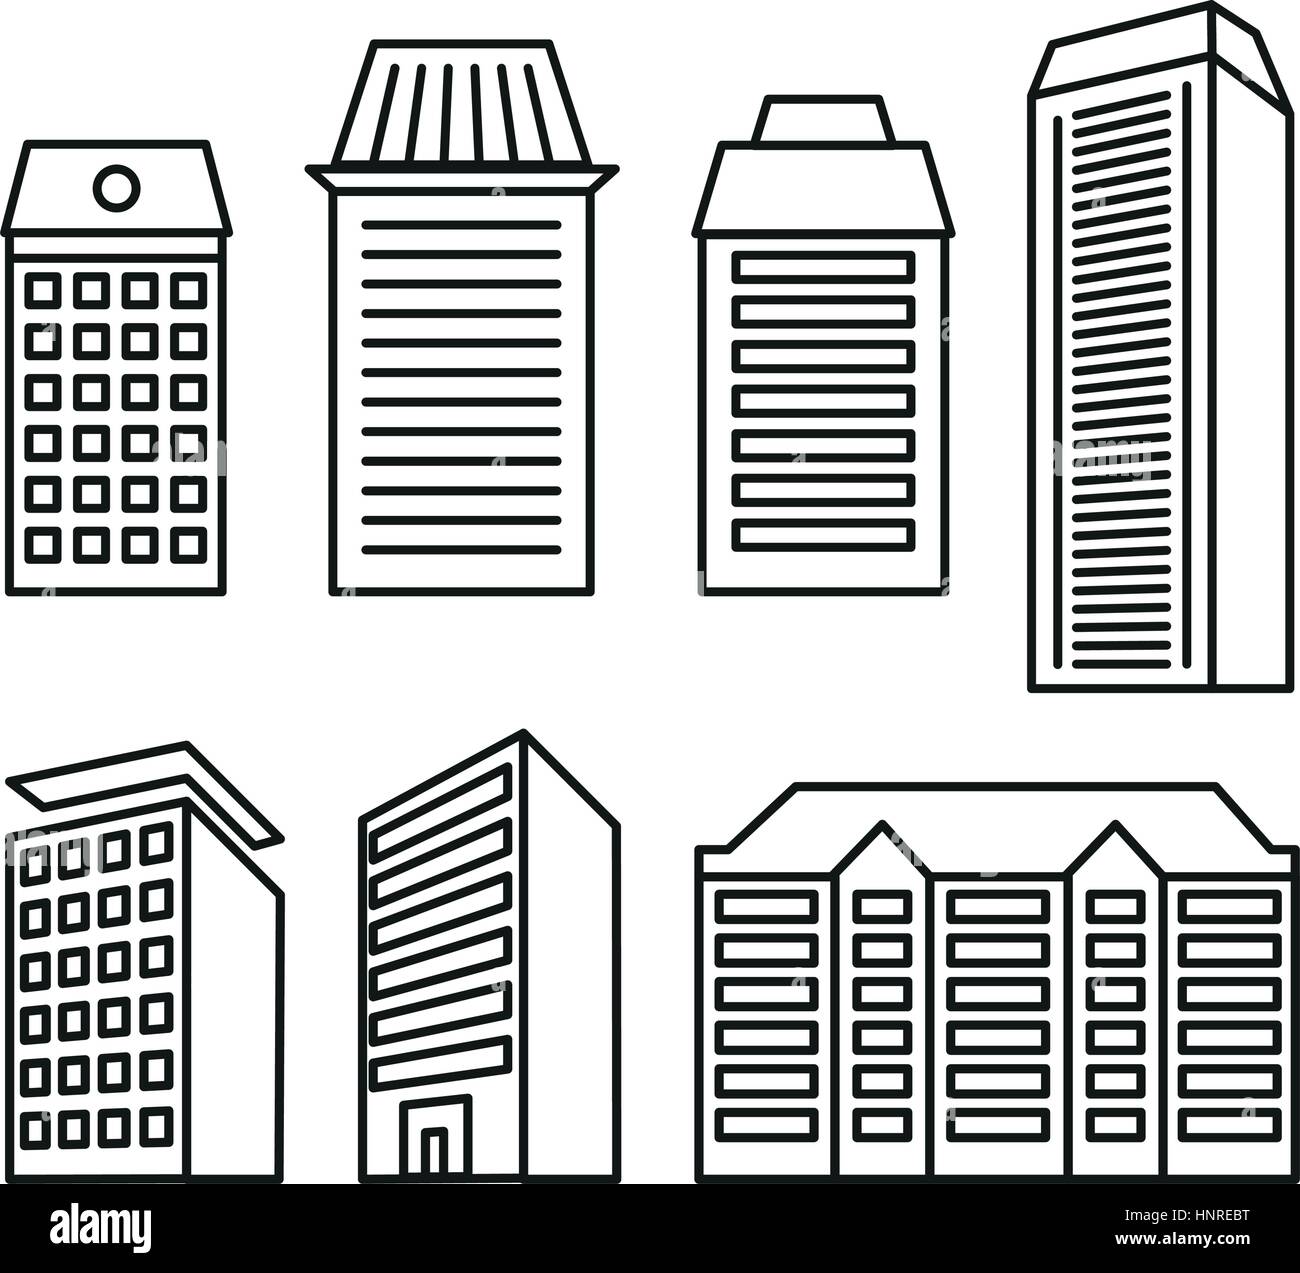 Aislados de color blanco y negro bloques de pisos y casas de baja altura en lineart colección de iconos de estilo, elementos de ilustraciones vectoriales de edificios de arquitectura urbana. Ilustración del Vector